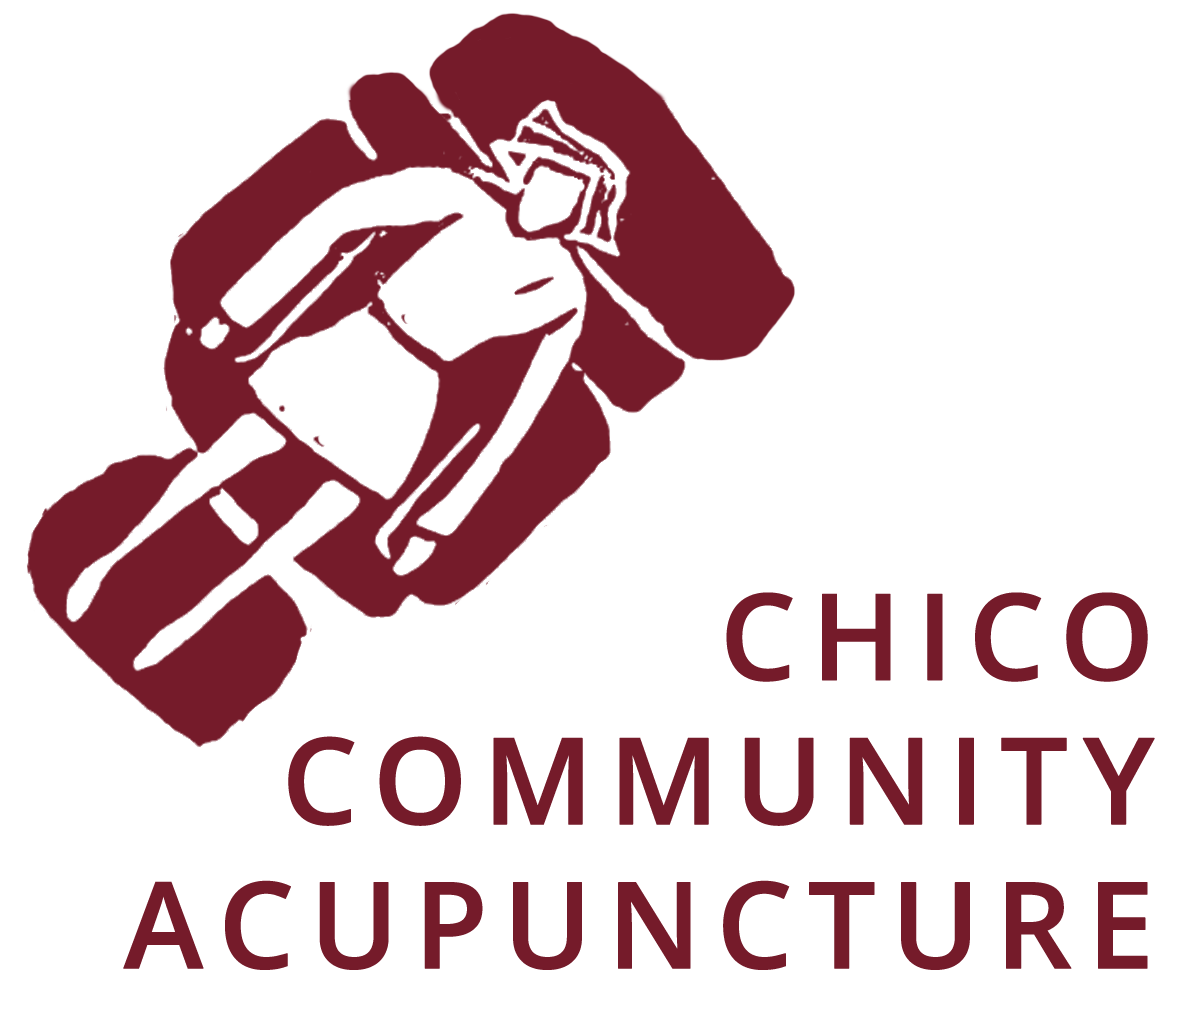 Chico Community Acupuncture